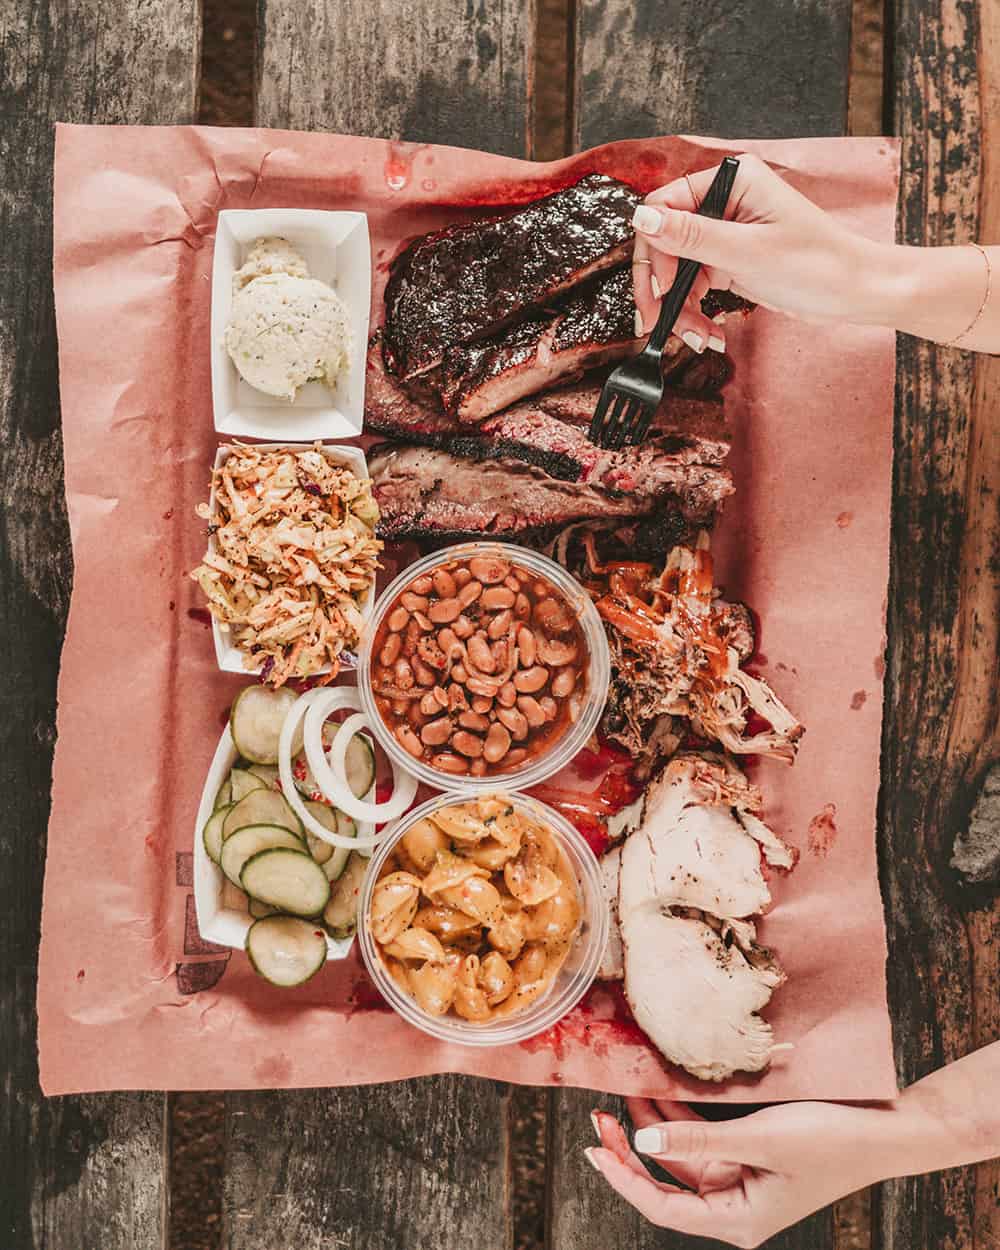 La Barbecue in Austin Texas